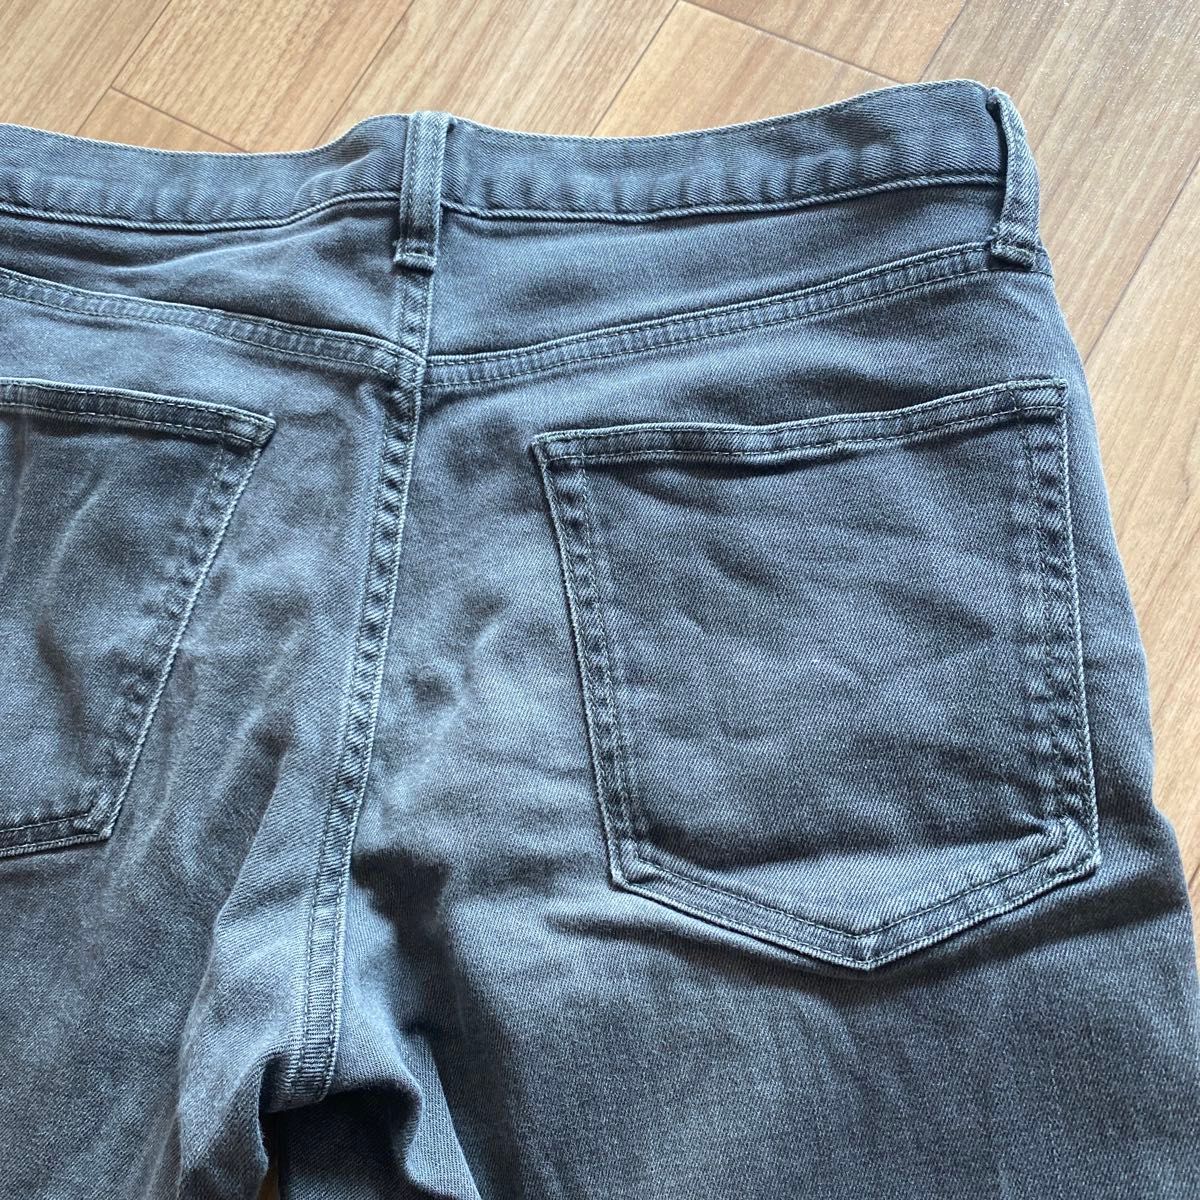 【即購入可】メンズ GU ジーユー ジーパン デニム パンツ ズボン 31インチ ブラック 黒 ストレート 伸縮 L